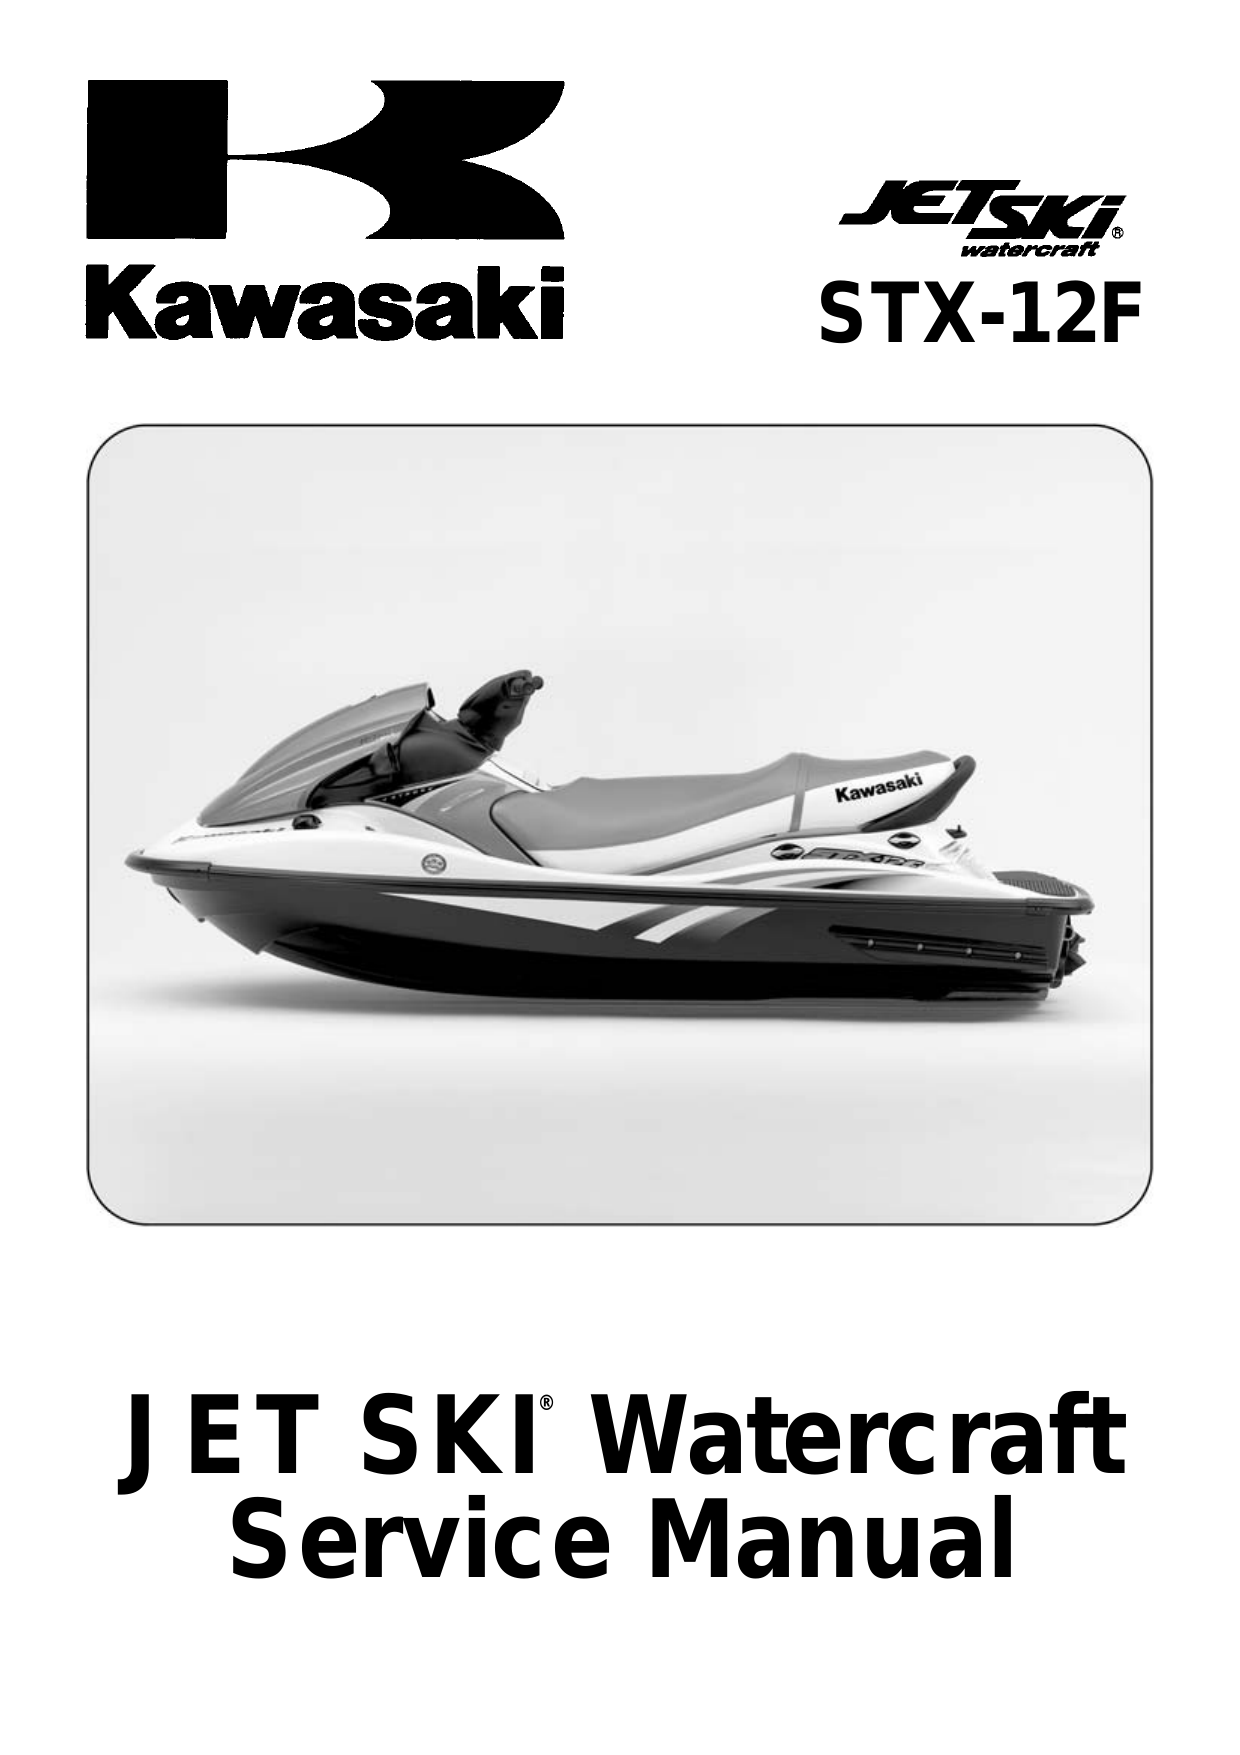 2005-2007 Kawasaki STX-12F service manual Preview image 6